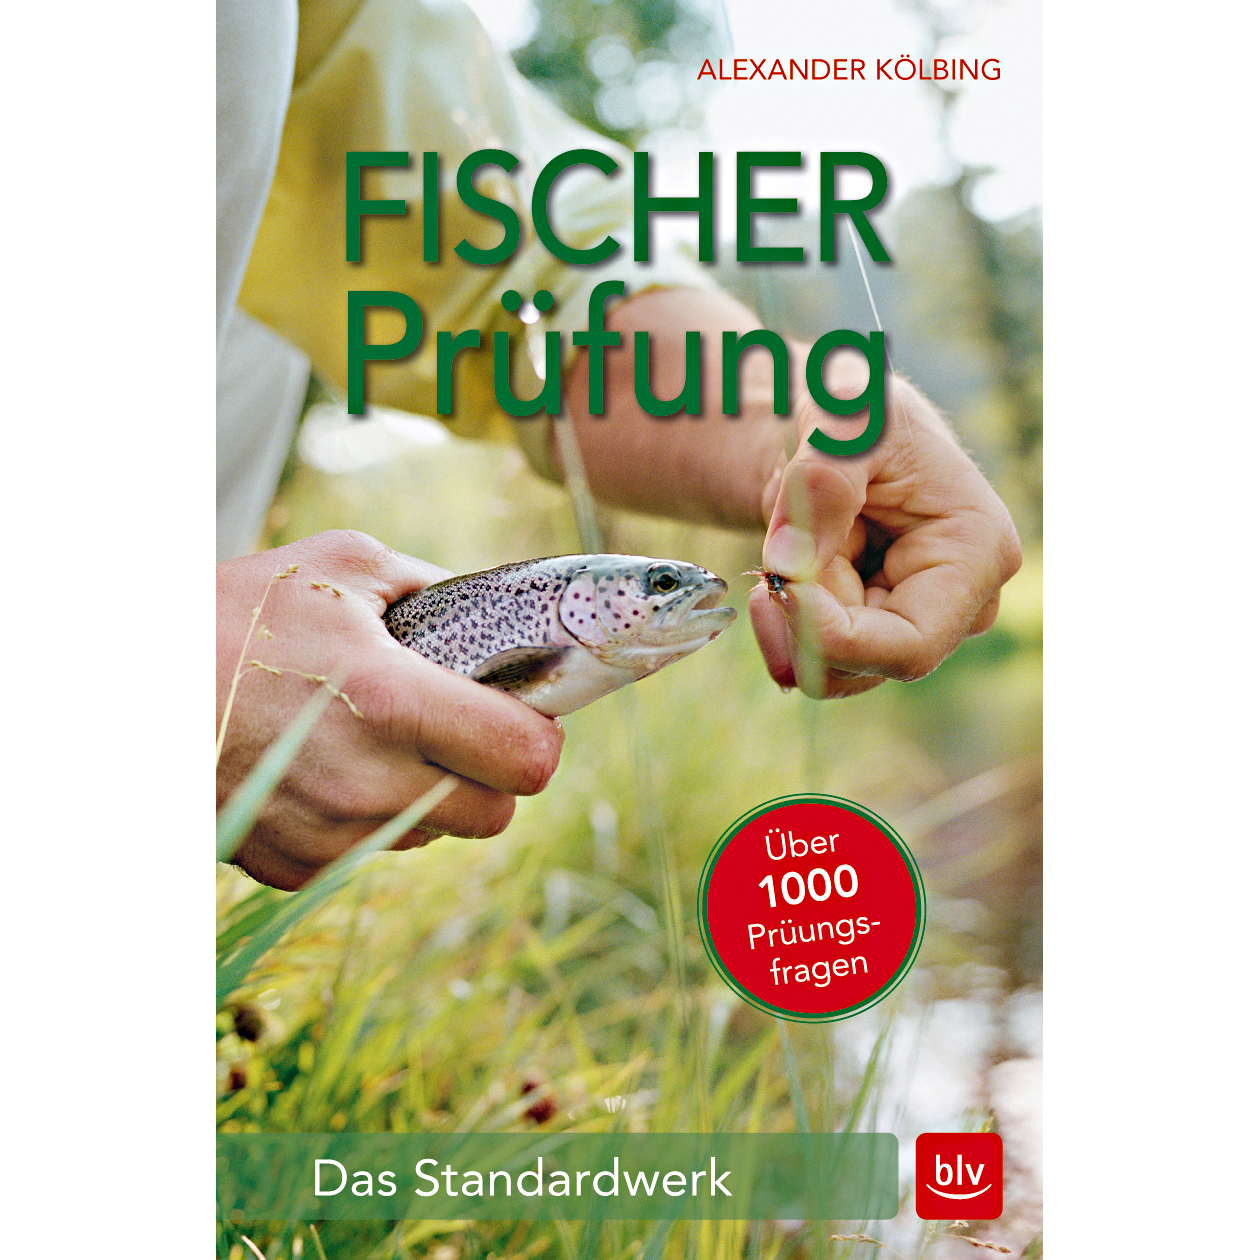 "Fischerprüfung" (fisher test) by Alexander Kölbing 